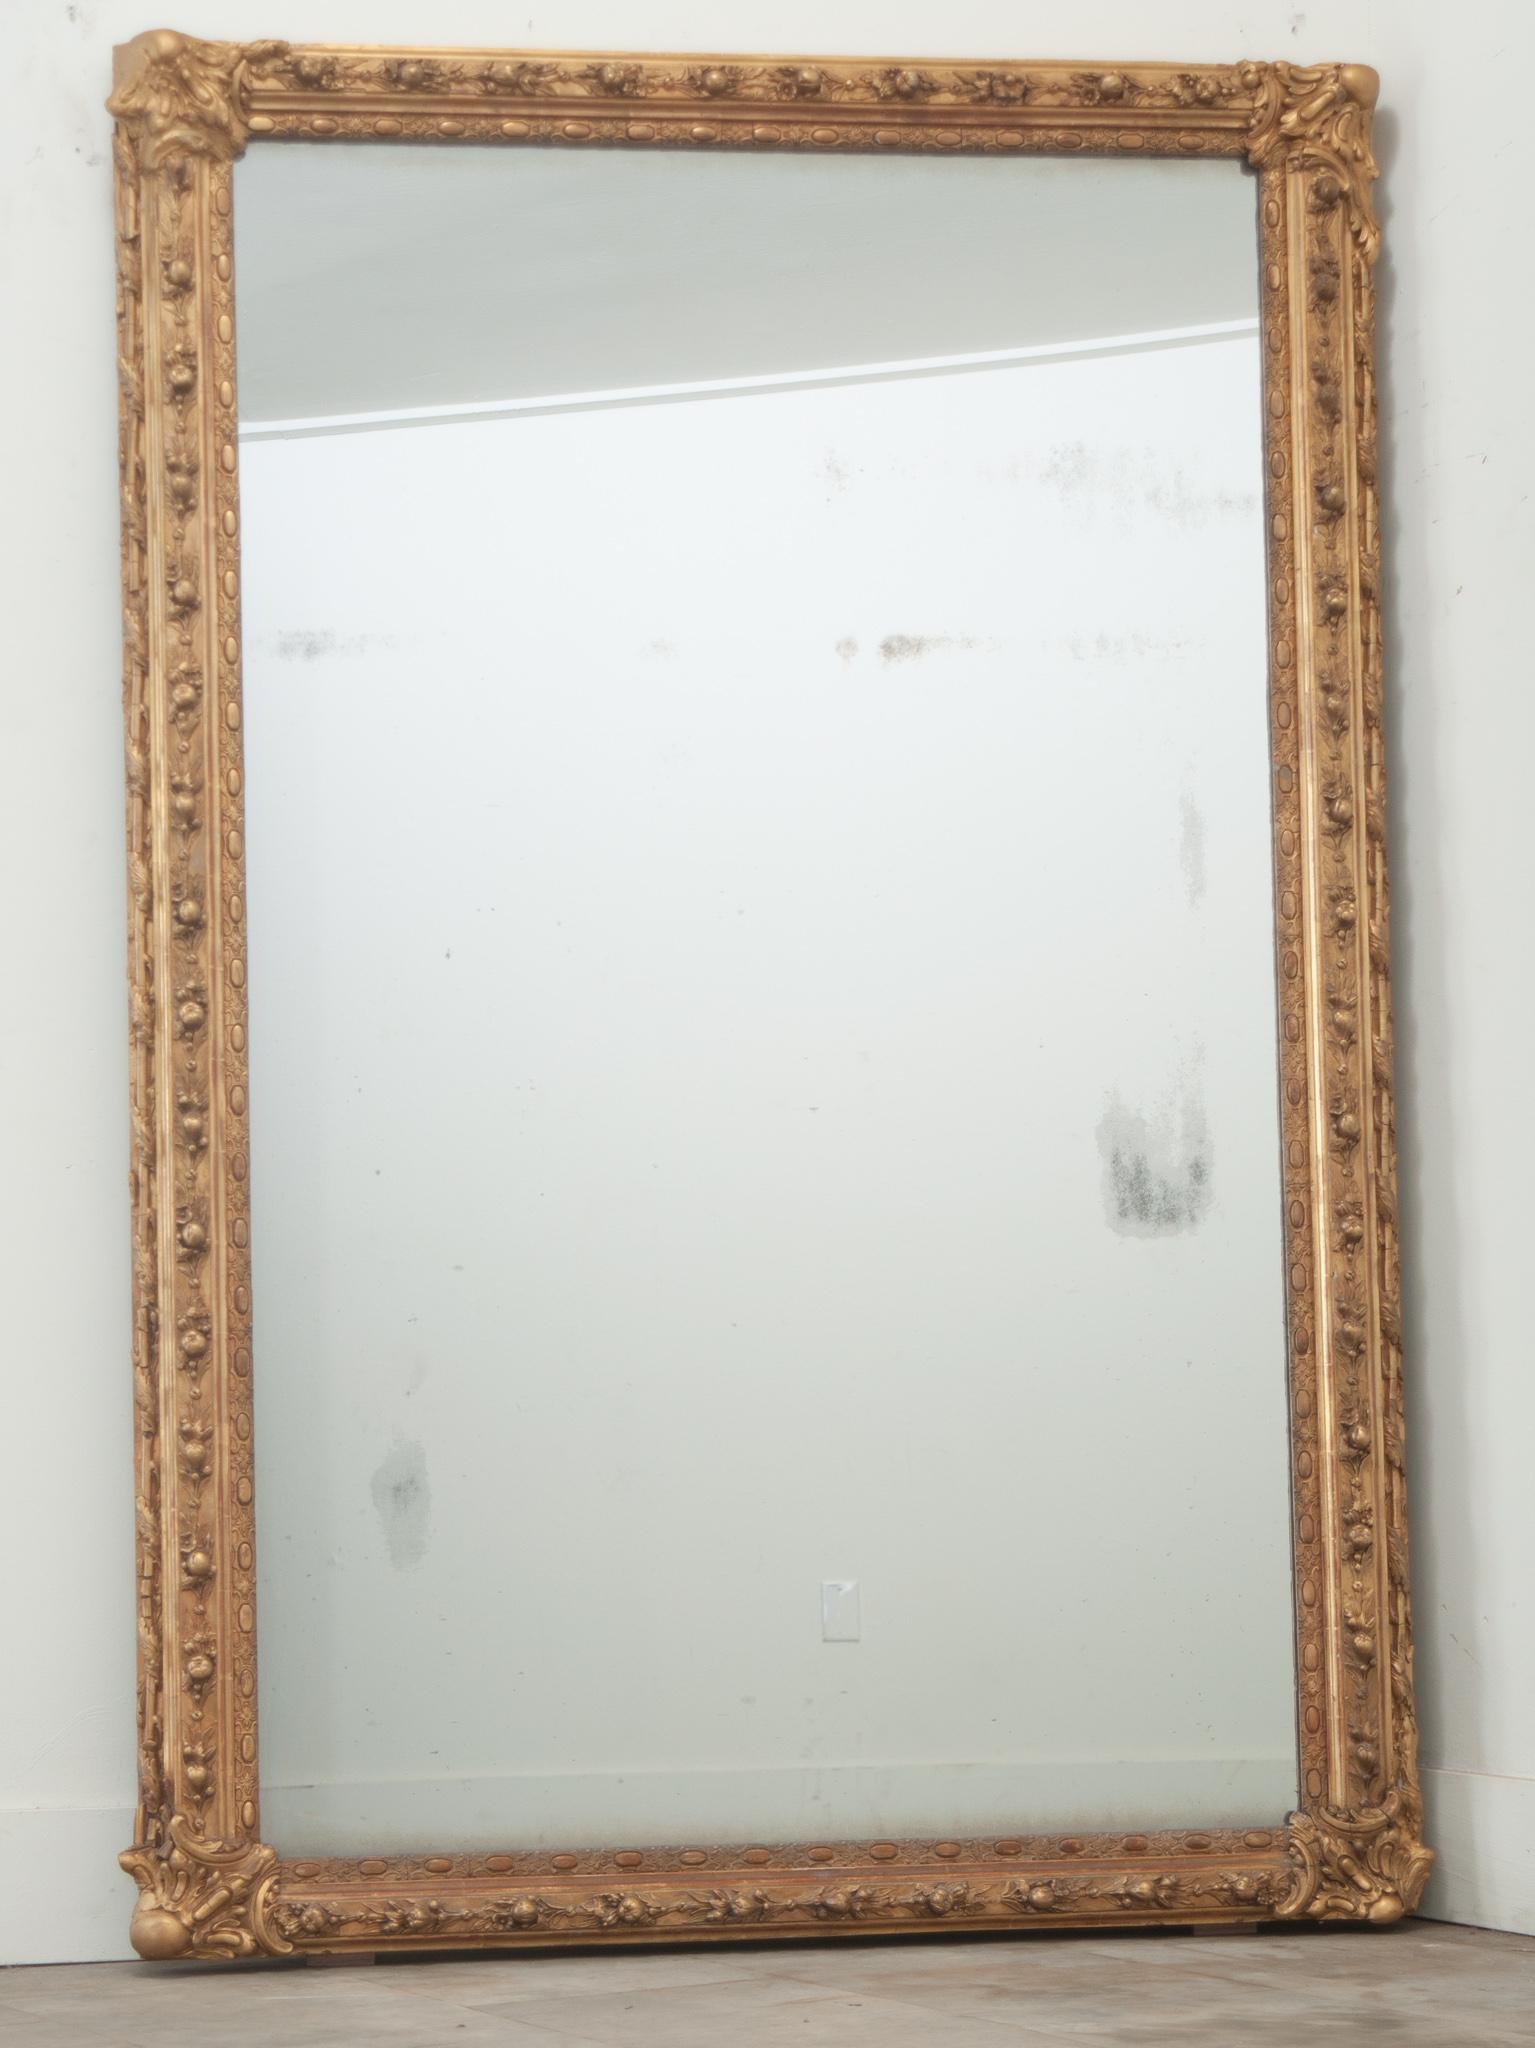 Ein symmetrischer Spiegel aus geformtem und vergoldetem französischem Holz. Dieser Spiegel hat beeindruckende Formen von Früchten, Blumen, verschlungenen Lorbeerblättern und anderen klassischen französischen Motiven, die ihn zu einem umwerfenden